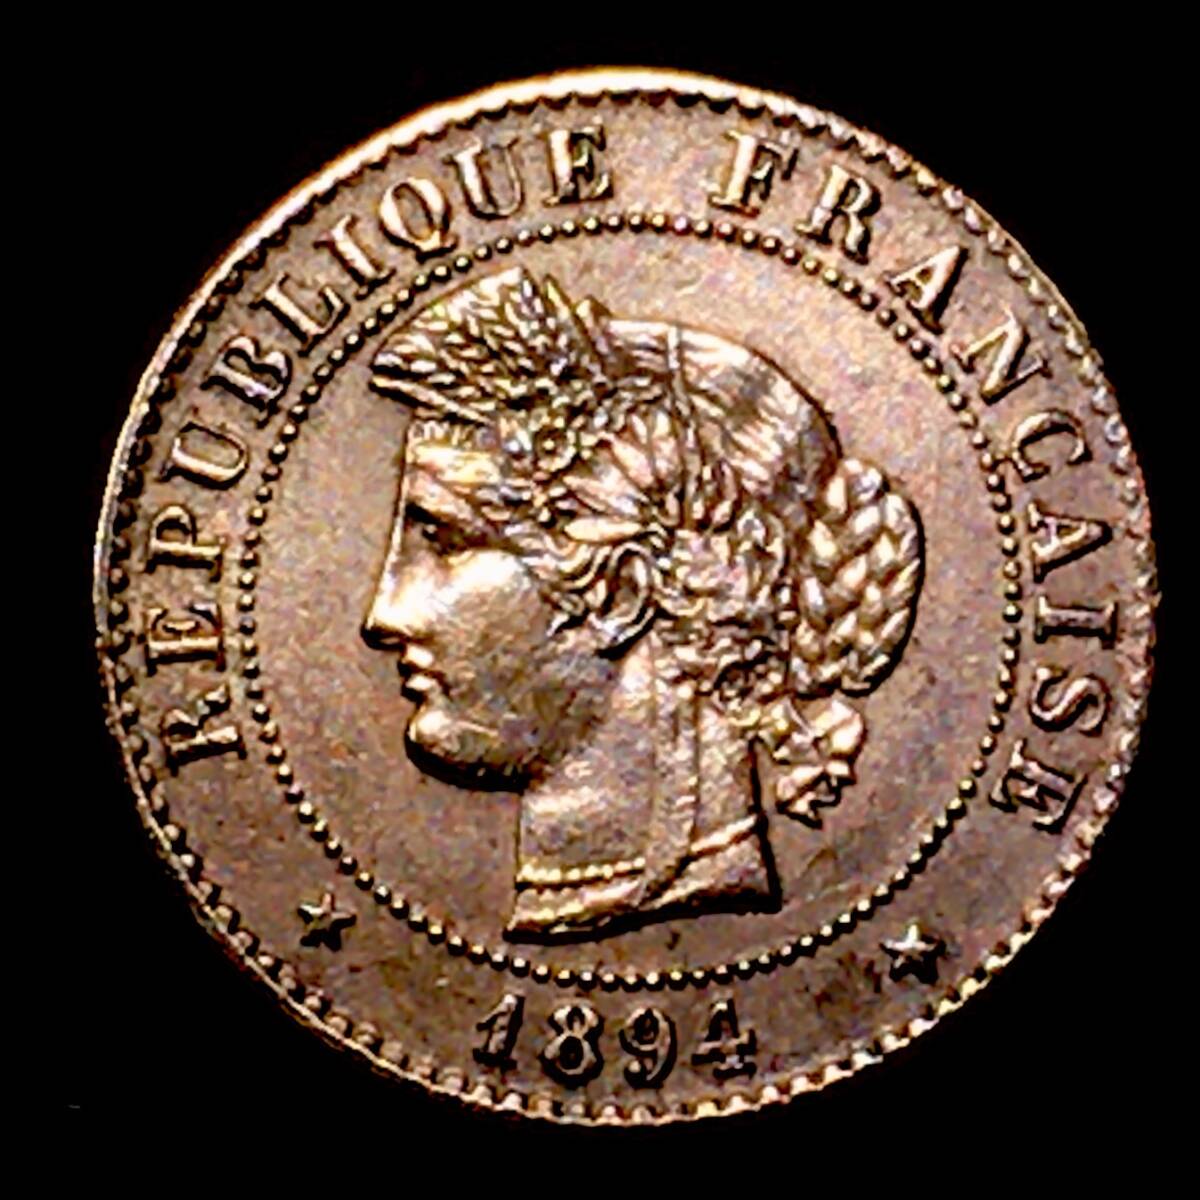  1894年 フランス 女神セレス 1サンチーム銅貨 極美品 本物保証 の画像3